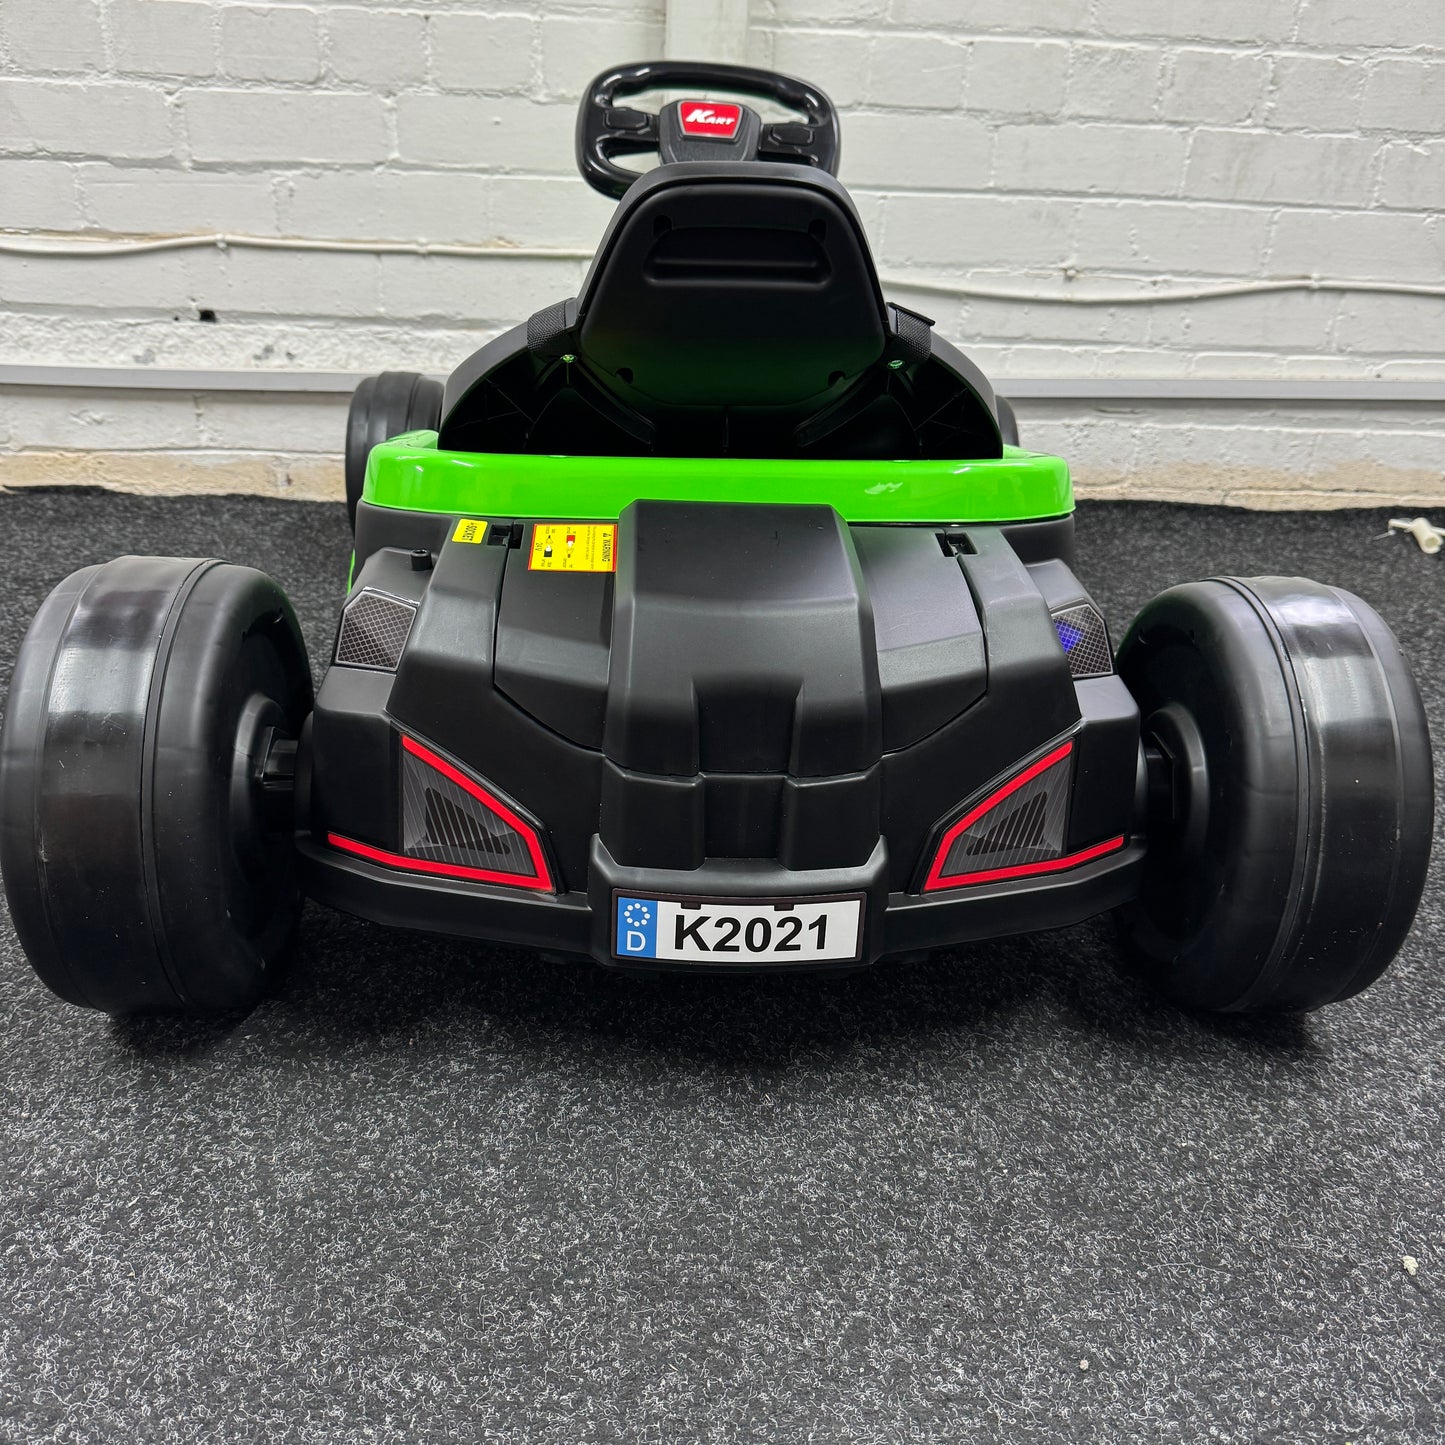 New Top Driver Kart 24V Drift Electric Kids Ride on Go Kart - Green